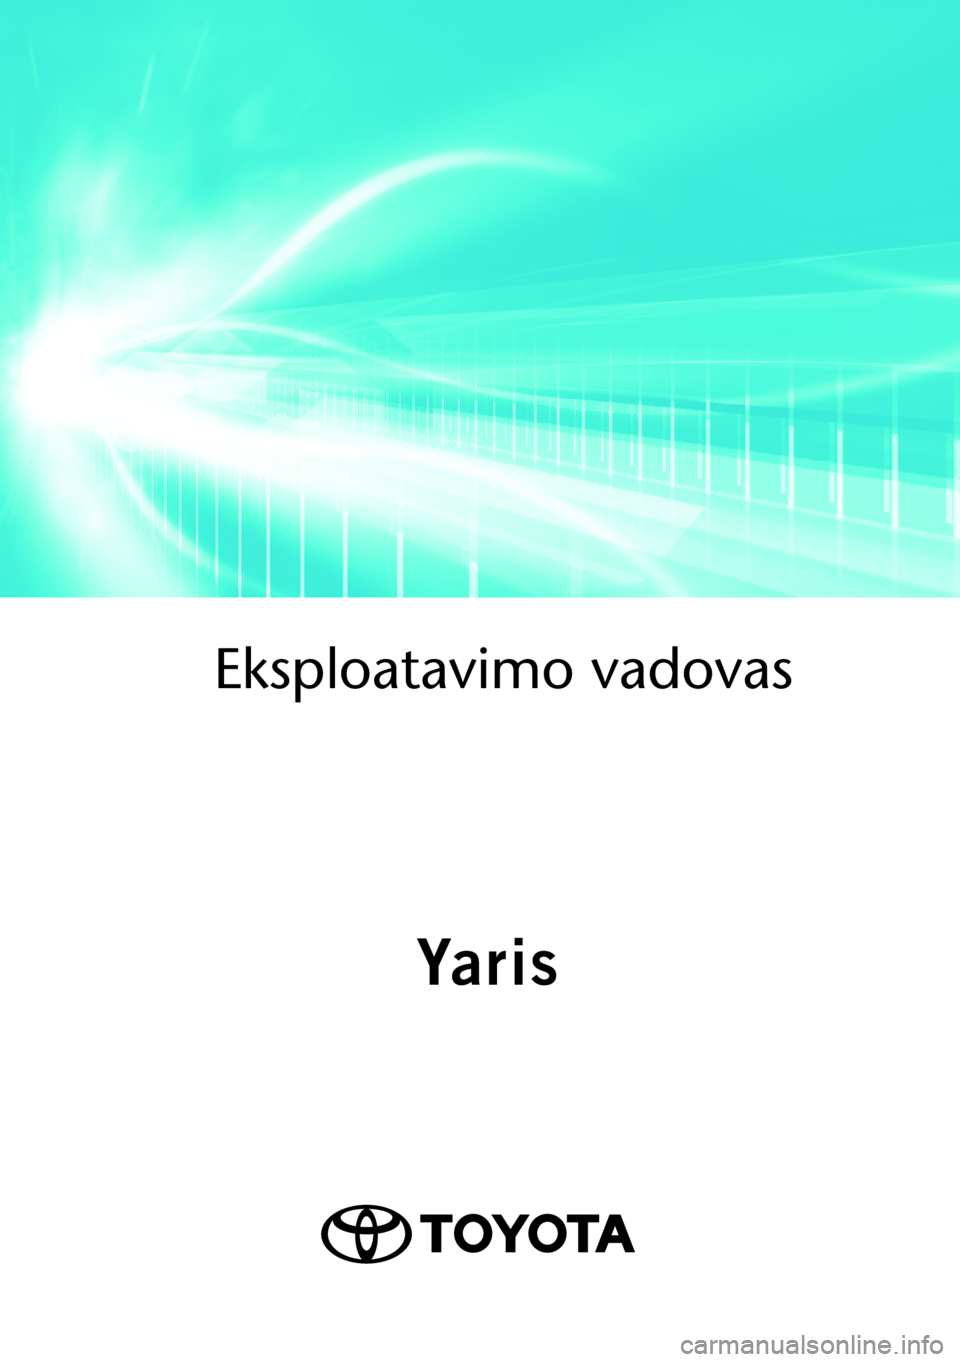 TOYOTA YARIS 2021  Eksploatavimo vadovas (in Lithuanian)  
Eksploatavimo vado\
vas
OMK0001LT
As of 07.2020 production vehicles
Yaris
Yaris 